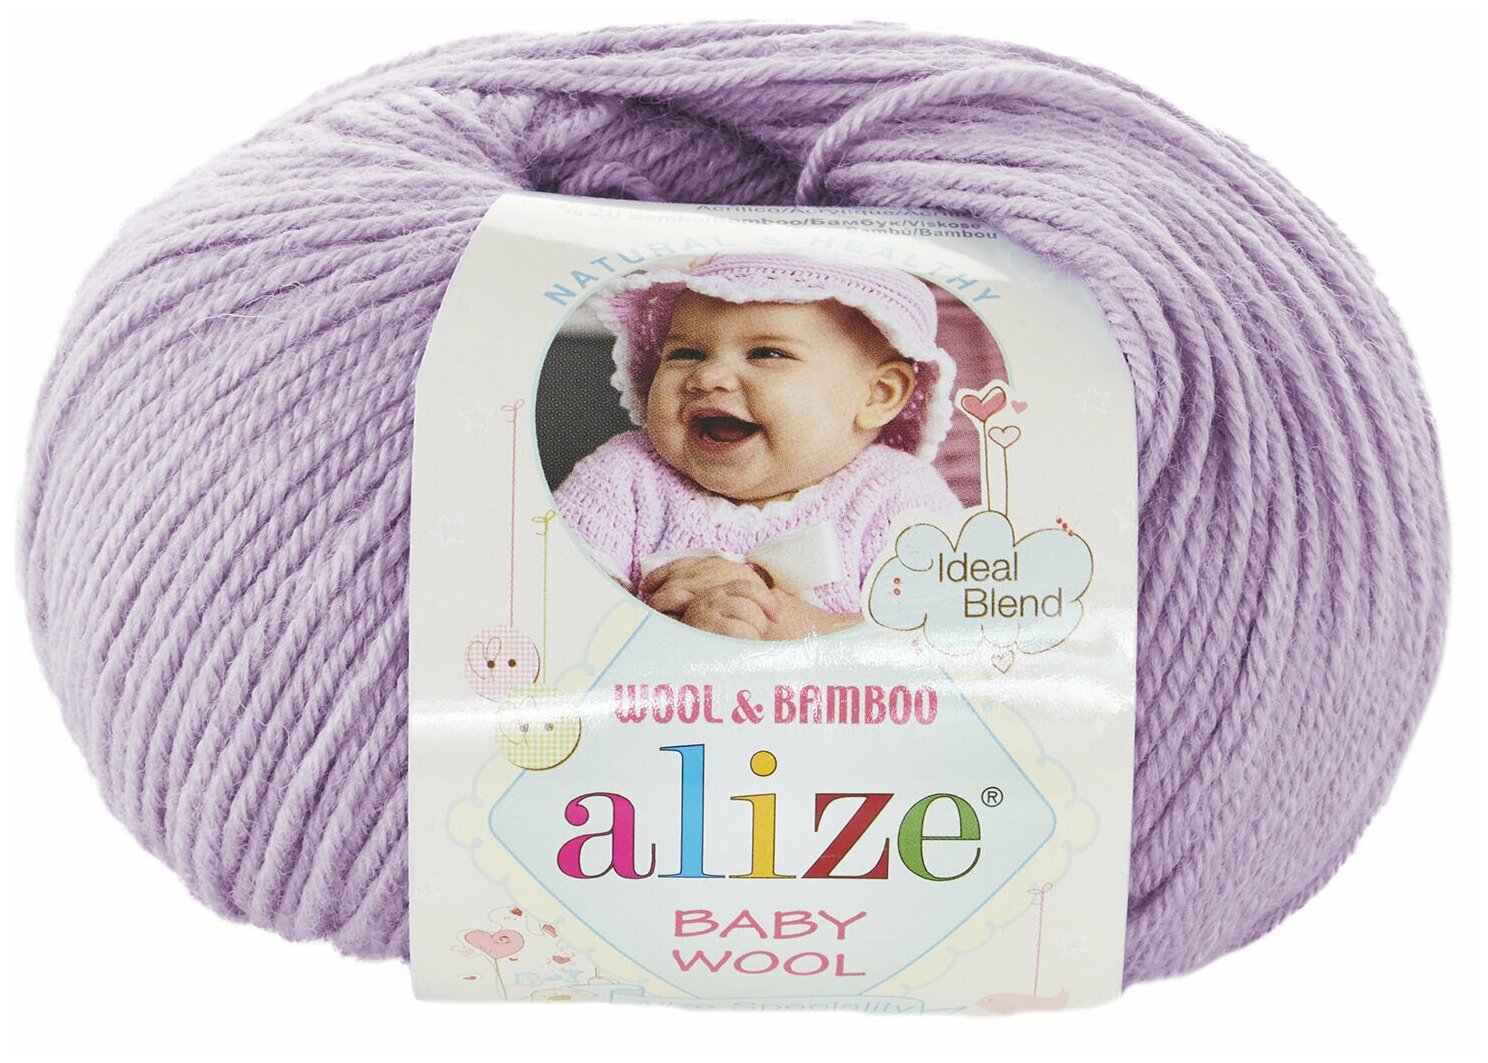 Пряжа Alize Baby Wool сирень (146), 40%шерсть/20%бамбук/40%акрил, 175м, 50г, 2шт